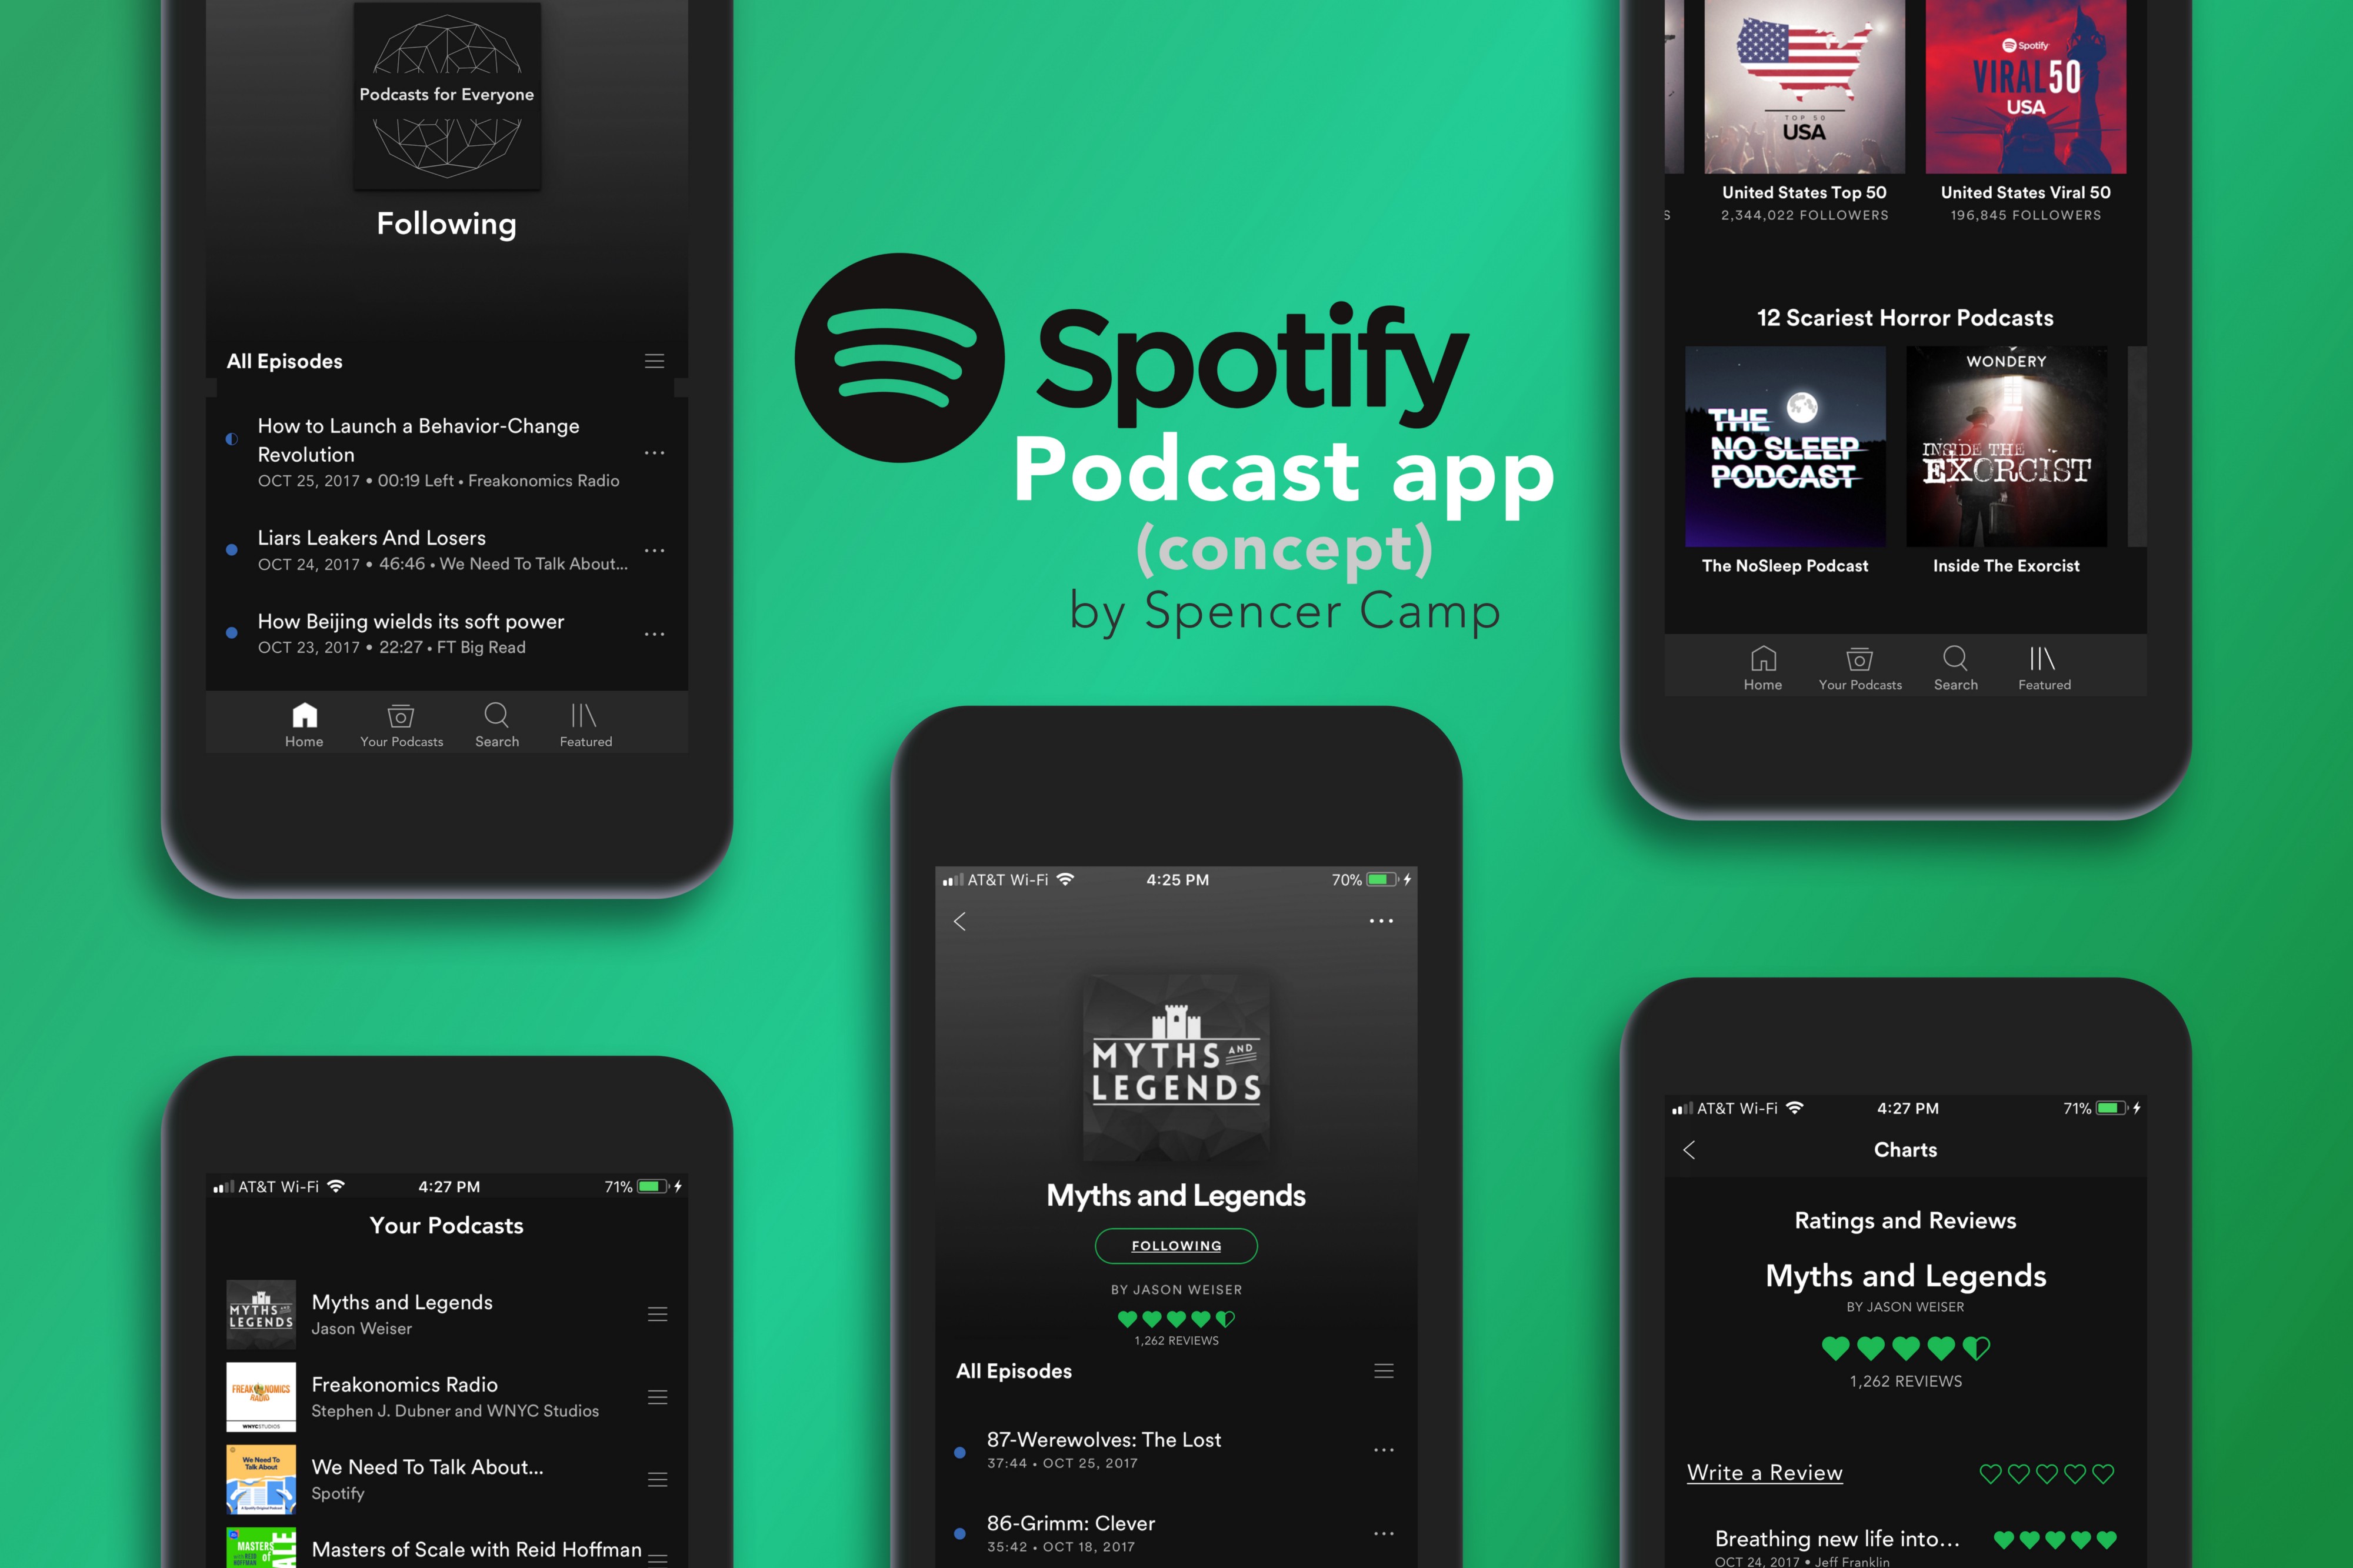 spotify-prueba-una-funcion-interactiva-para-podcast-asi-es-como-funciona